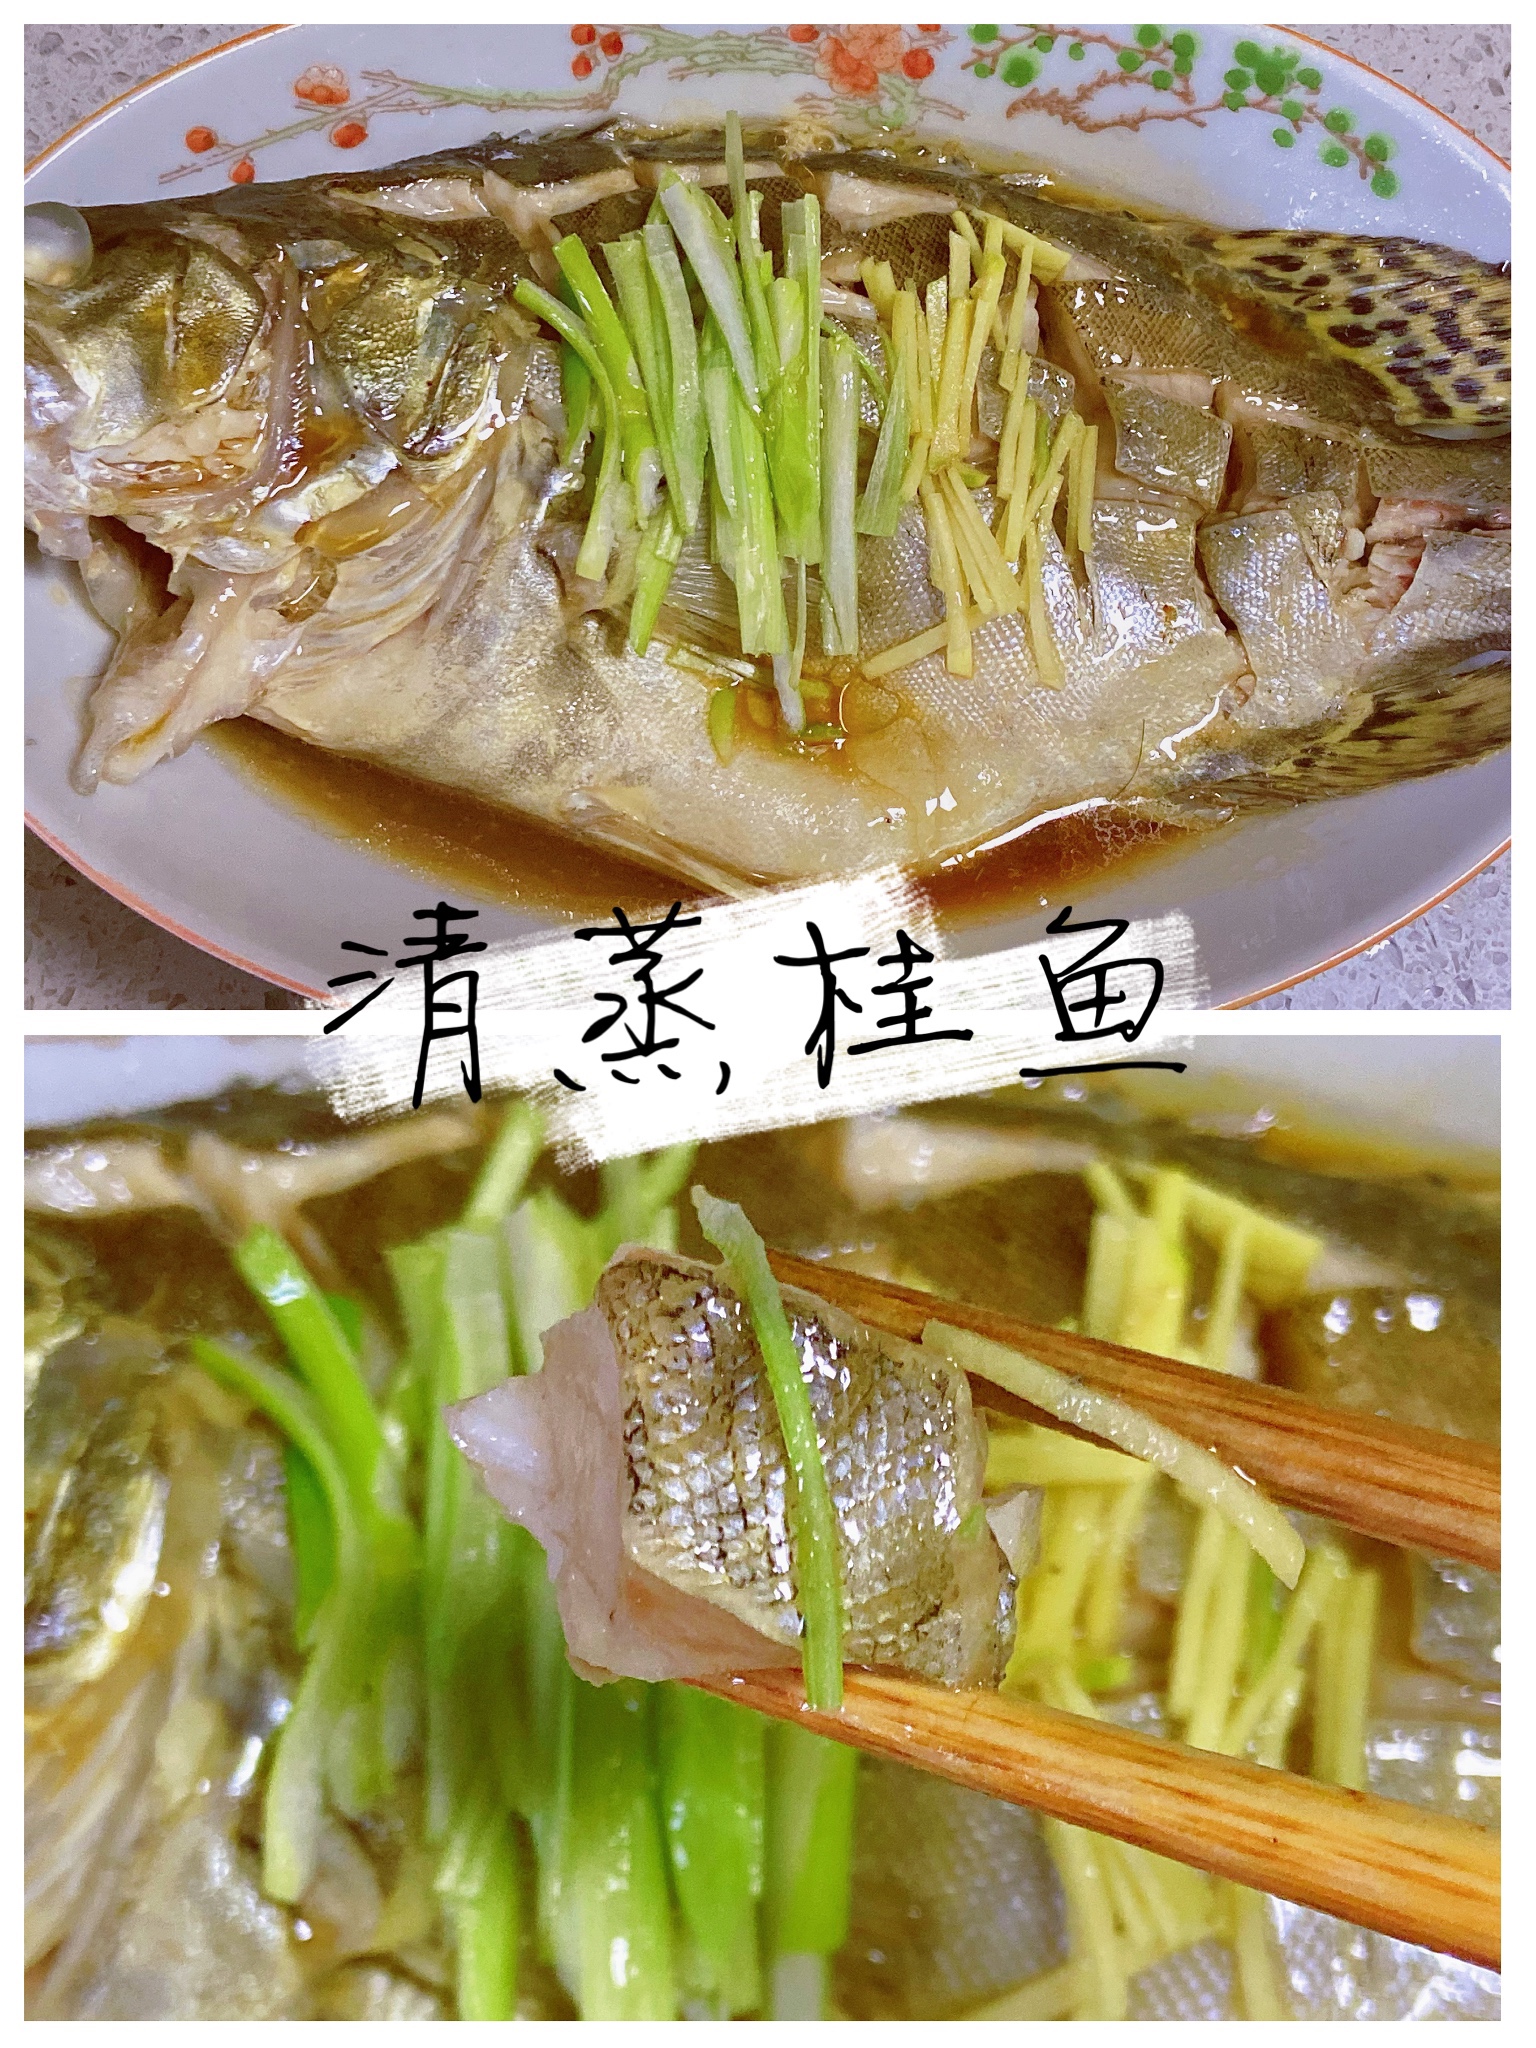 ✅第12道减脂菜✨鲜嫩营养的清蒸桂鱼🐟的做法